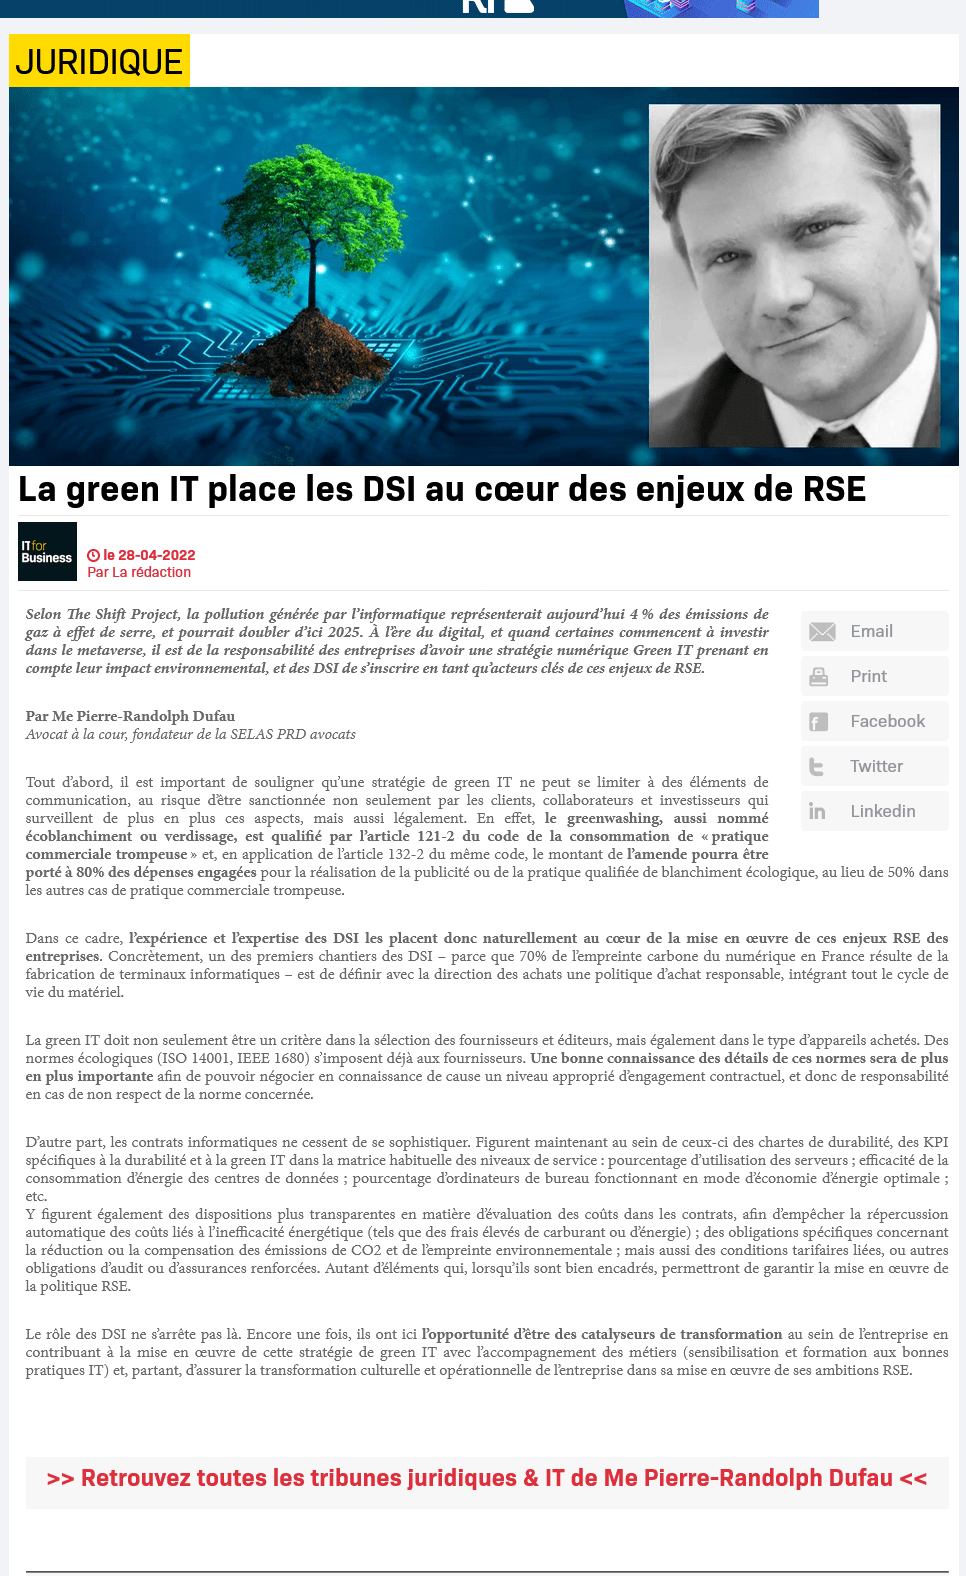 Le green IT place les DSI au coeur des enjeux de RSE